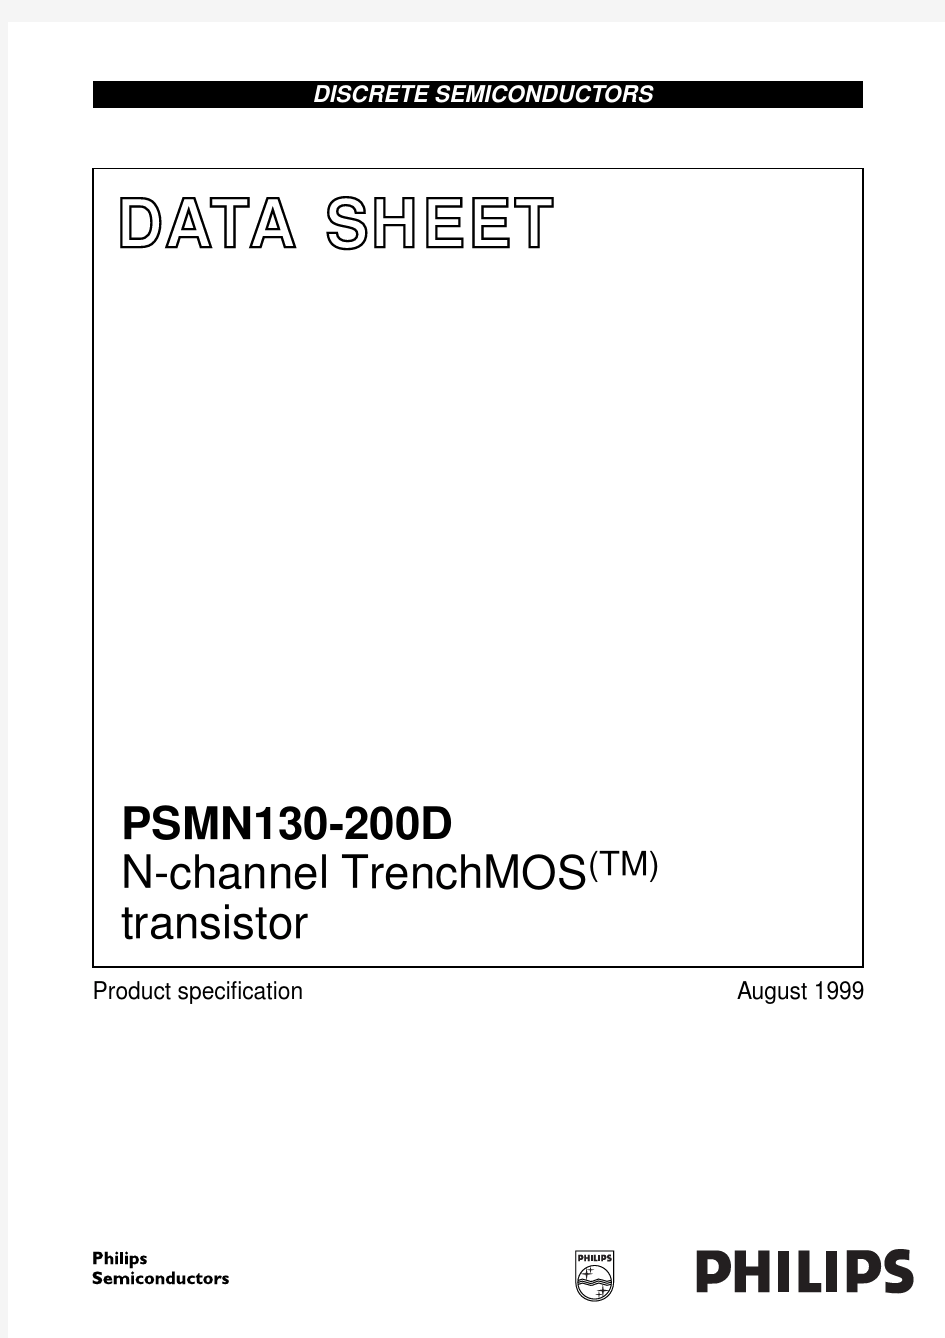 PSMN130-200D中文资料